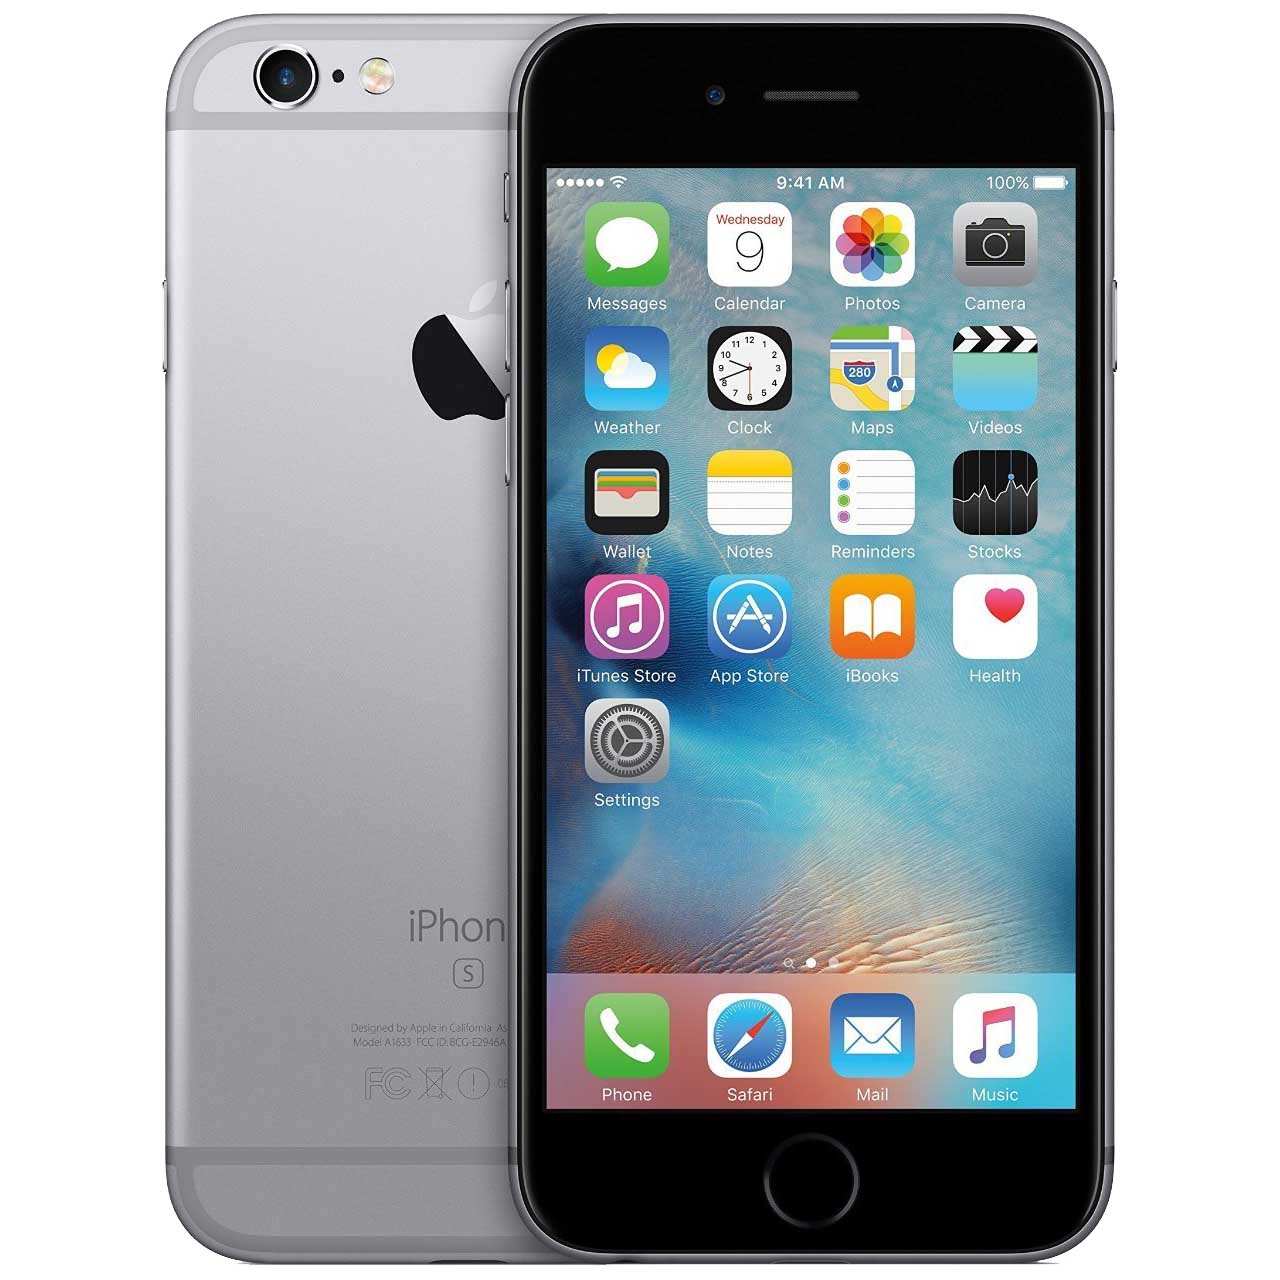 apple-iphone-6s